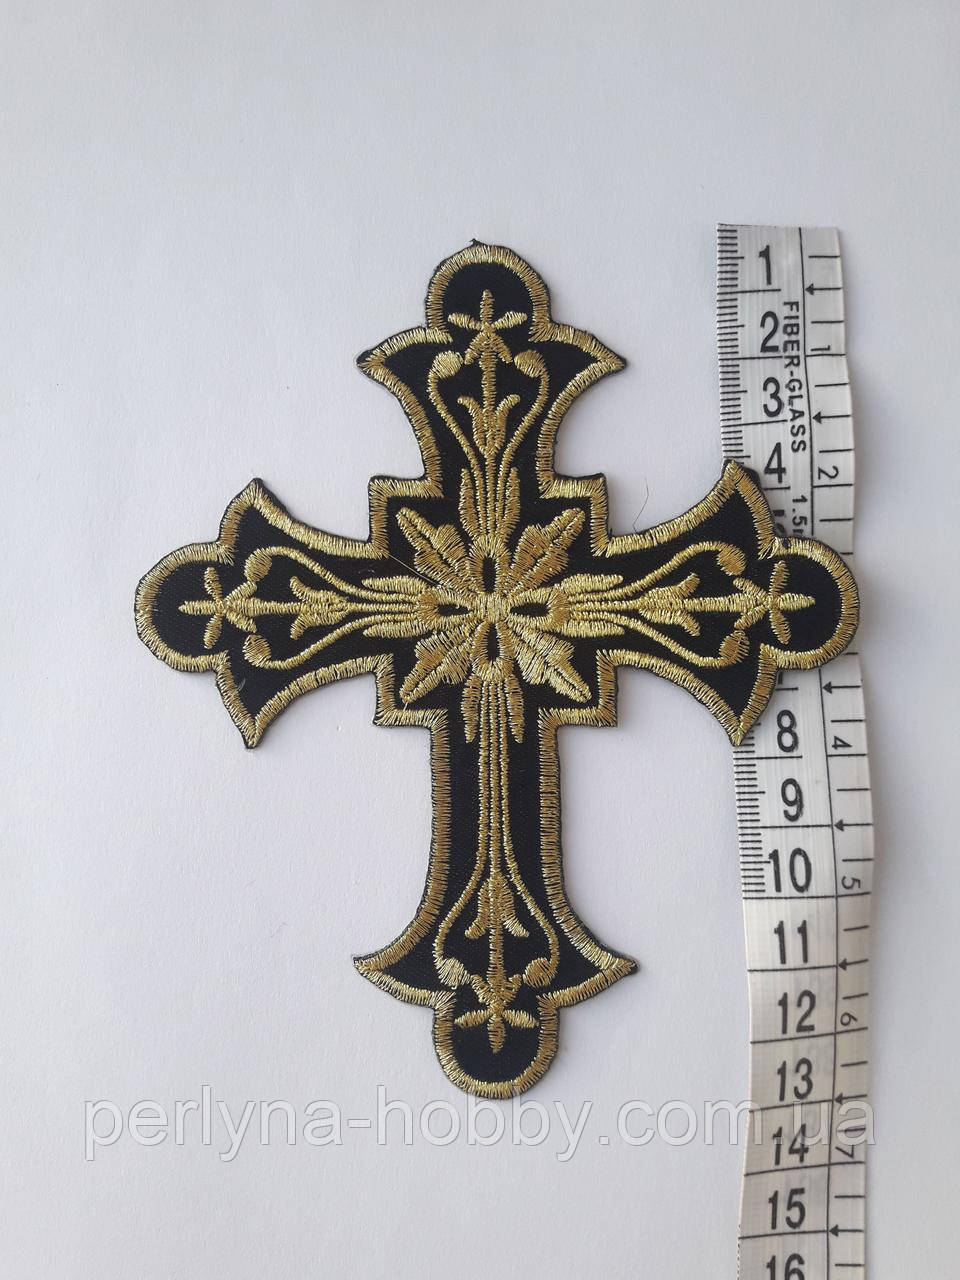 Хрест для церковного одягу малий алікація клейова 13.5х10.5 см чорний з золотом. Хрест аплікація